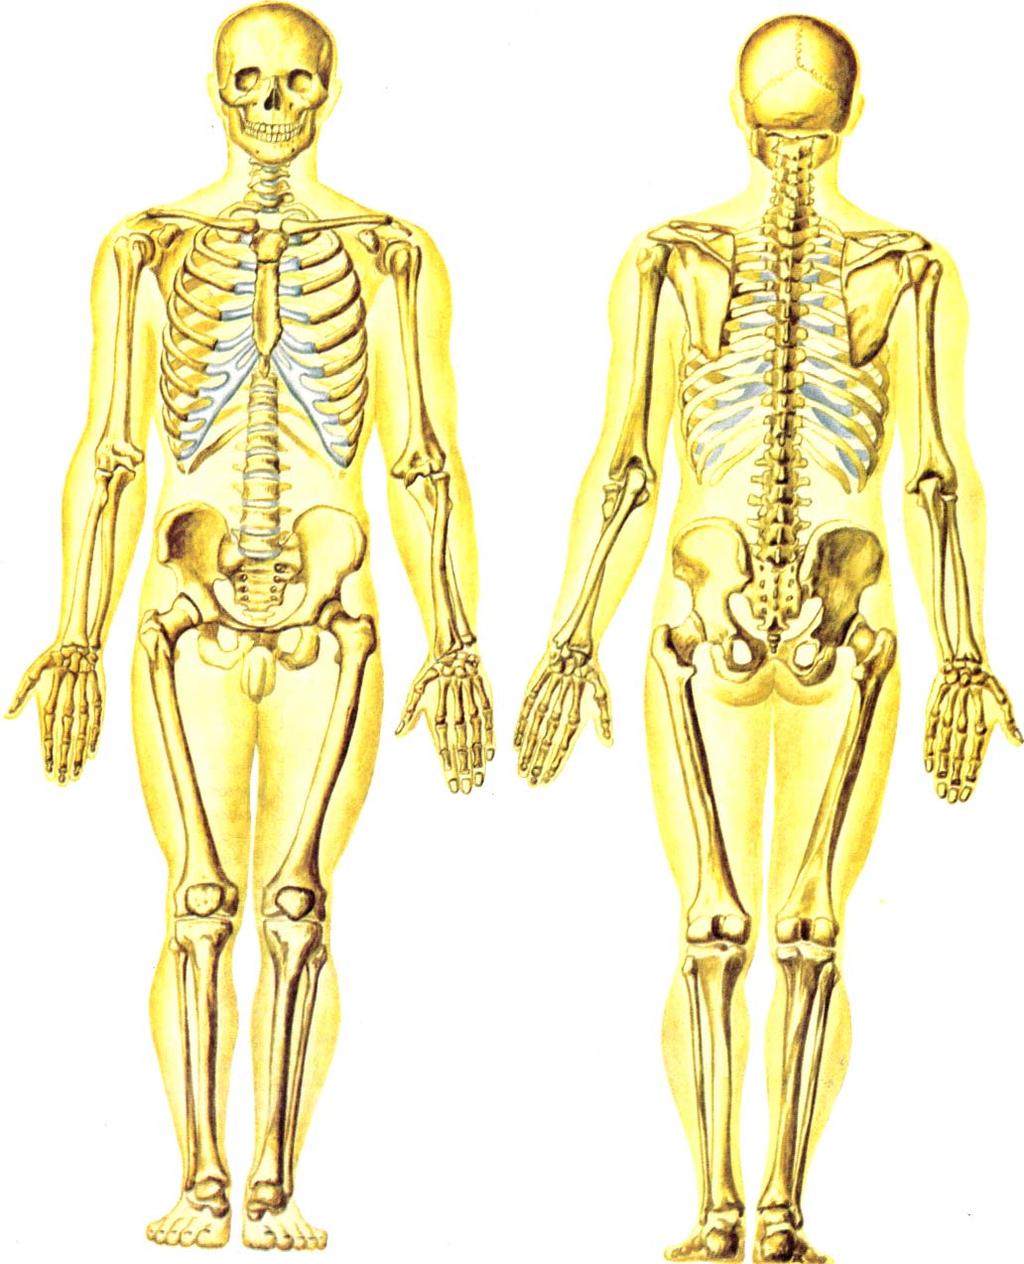 El sistema esquelético del hombre está compuesto principalmente por órganos llamados huesos y por componentes menores, de cartílago.